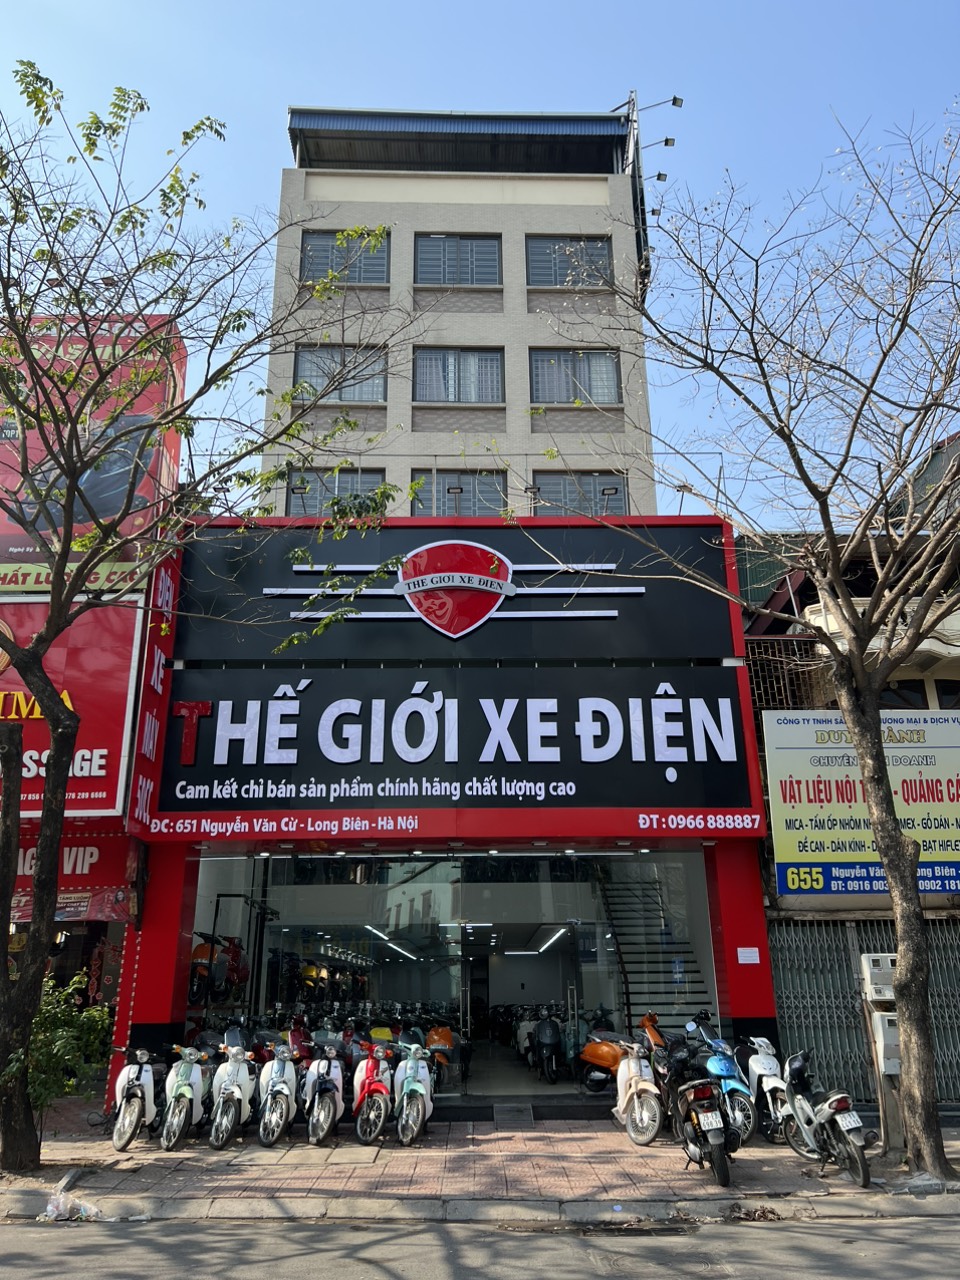 Đại lý xe điện, xe máy 50cc của Thế Giới Xe Điện tại Hà Nội